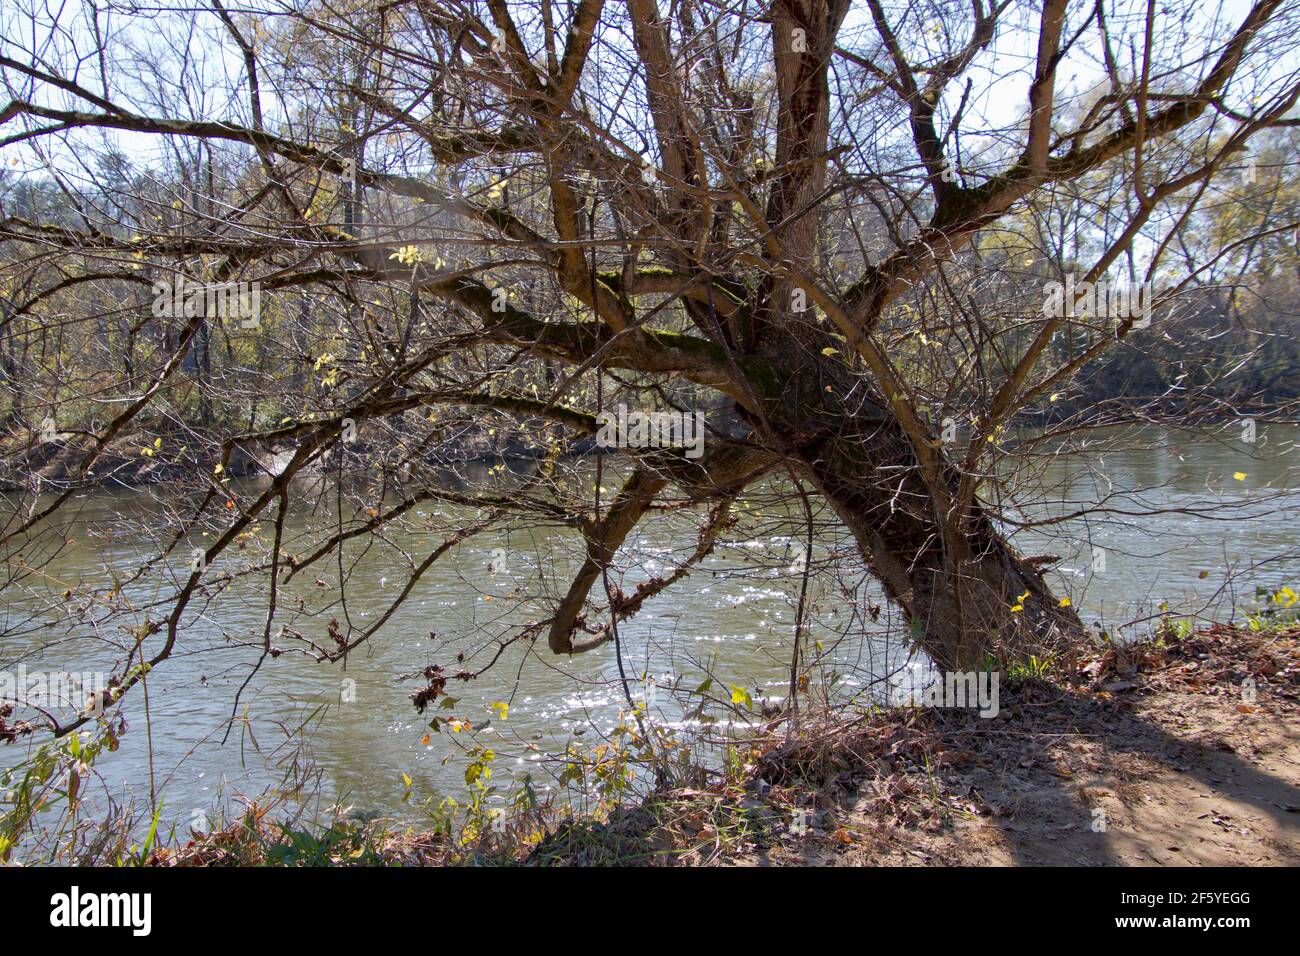 Un viejo árbol de la orilla del río con un caballero se inclina sobre el río agarrando obstinadamente la orilla del río con sus raíces Foto de stock